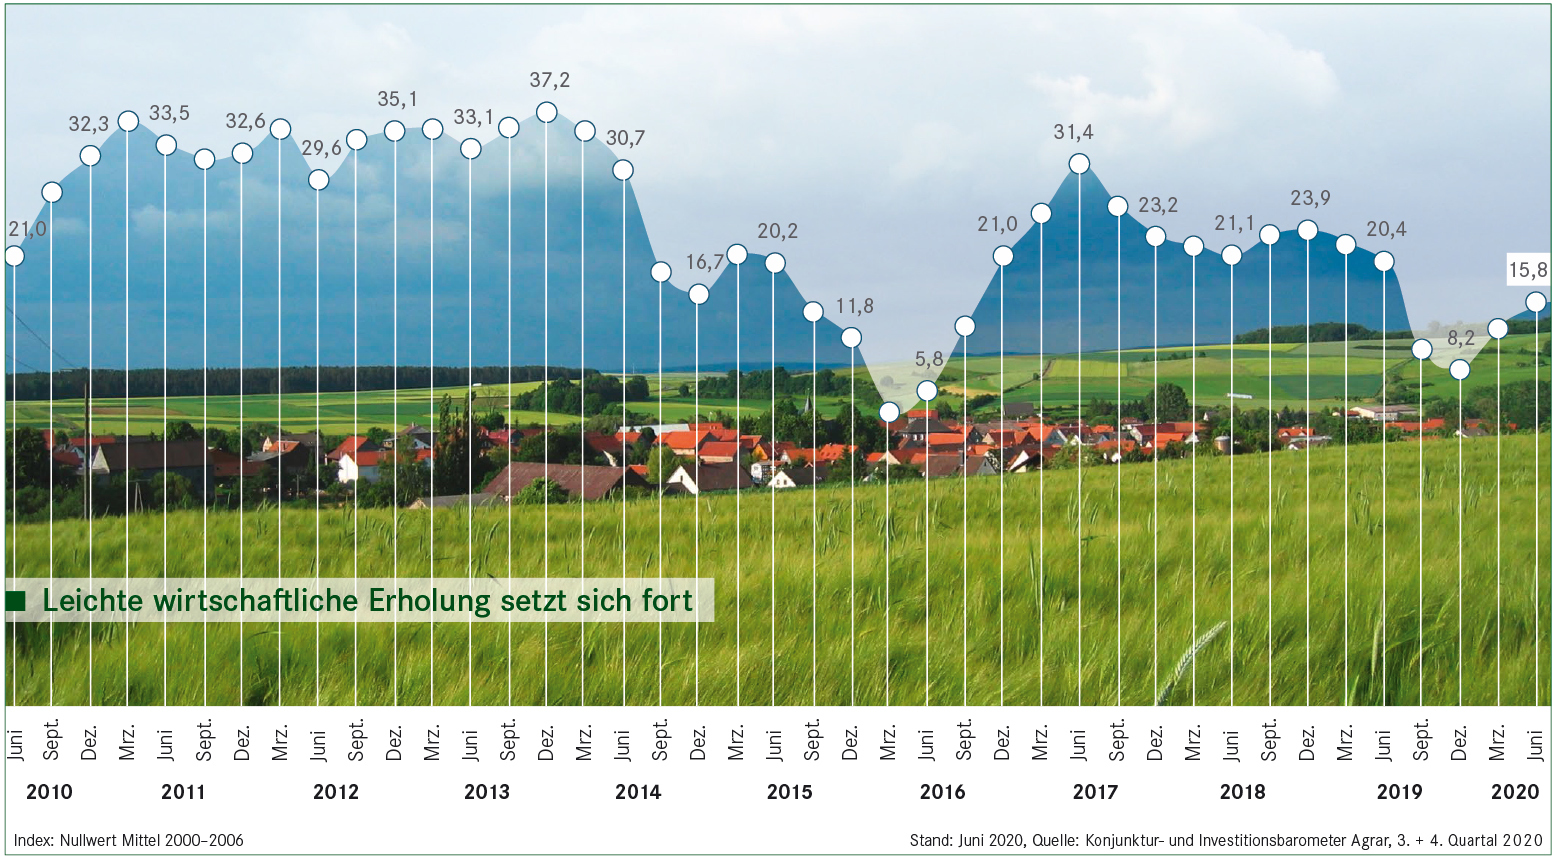 Konjunkturbarometer Agrar: Stimmung der Landwirte leicht verbessert